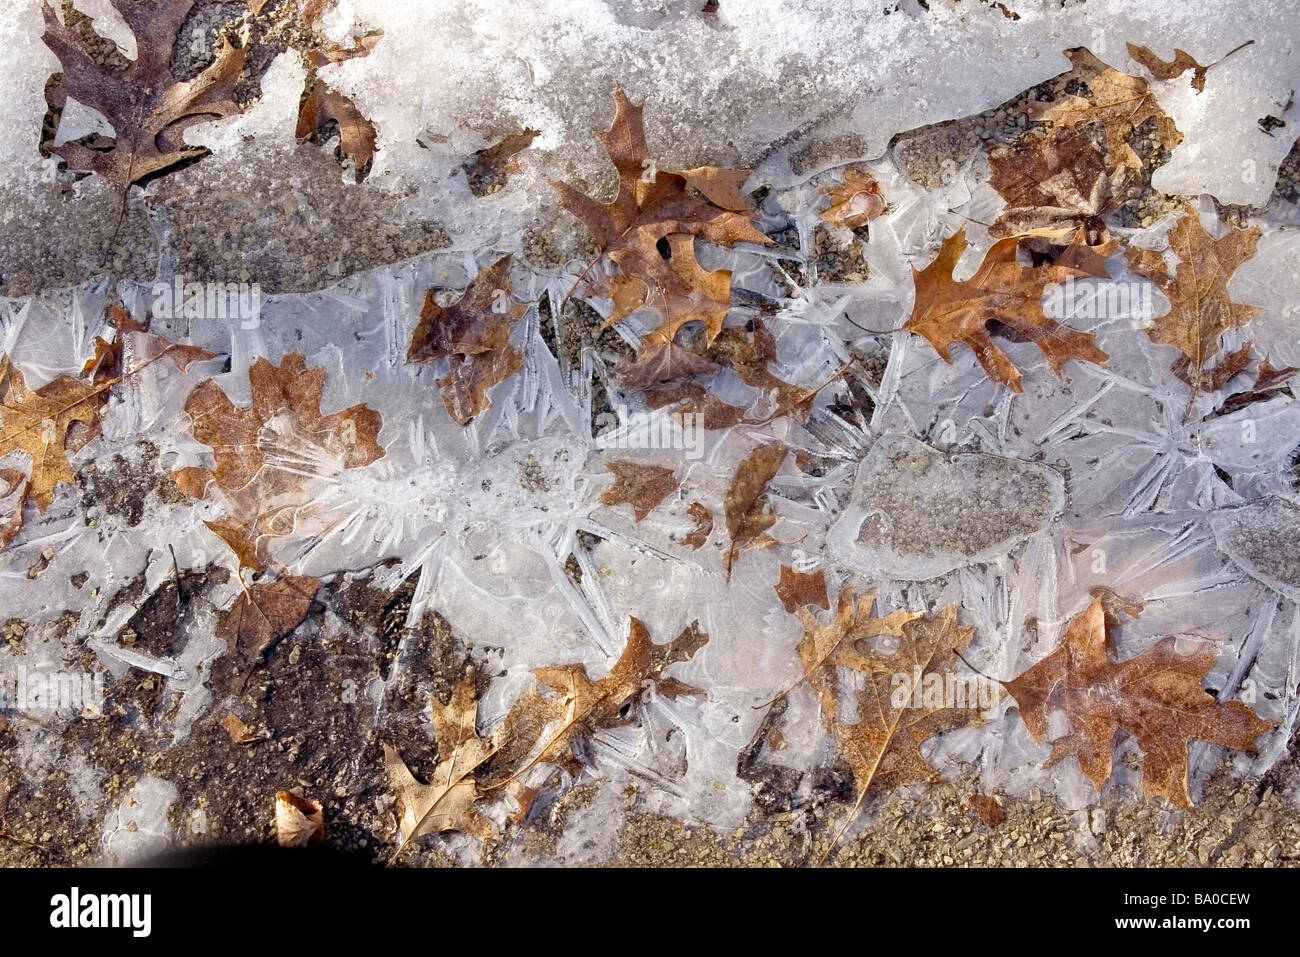 Des modèles dans des cristaux de glace et de feuilles séchées Banque D'Images